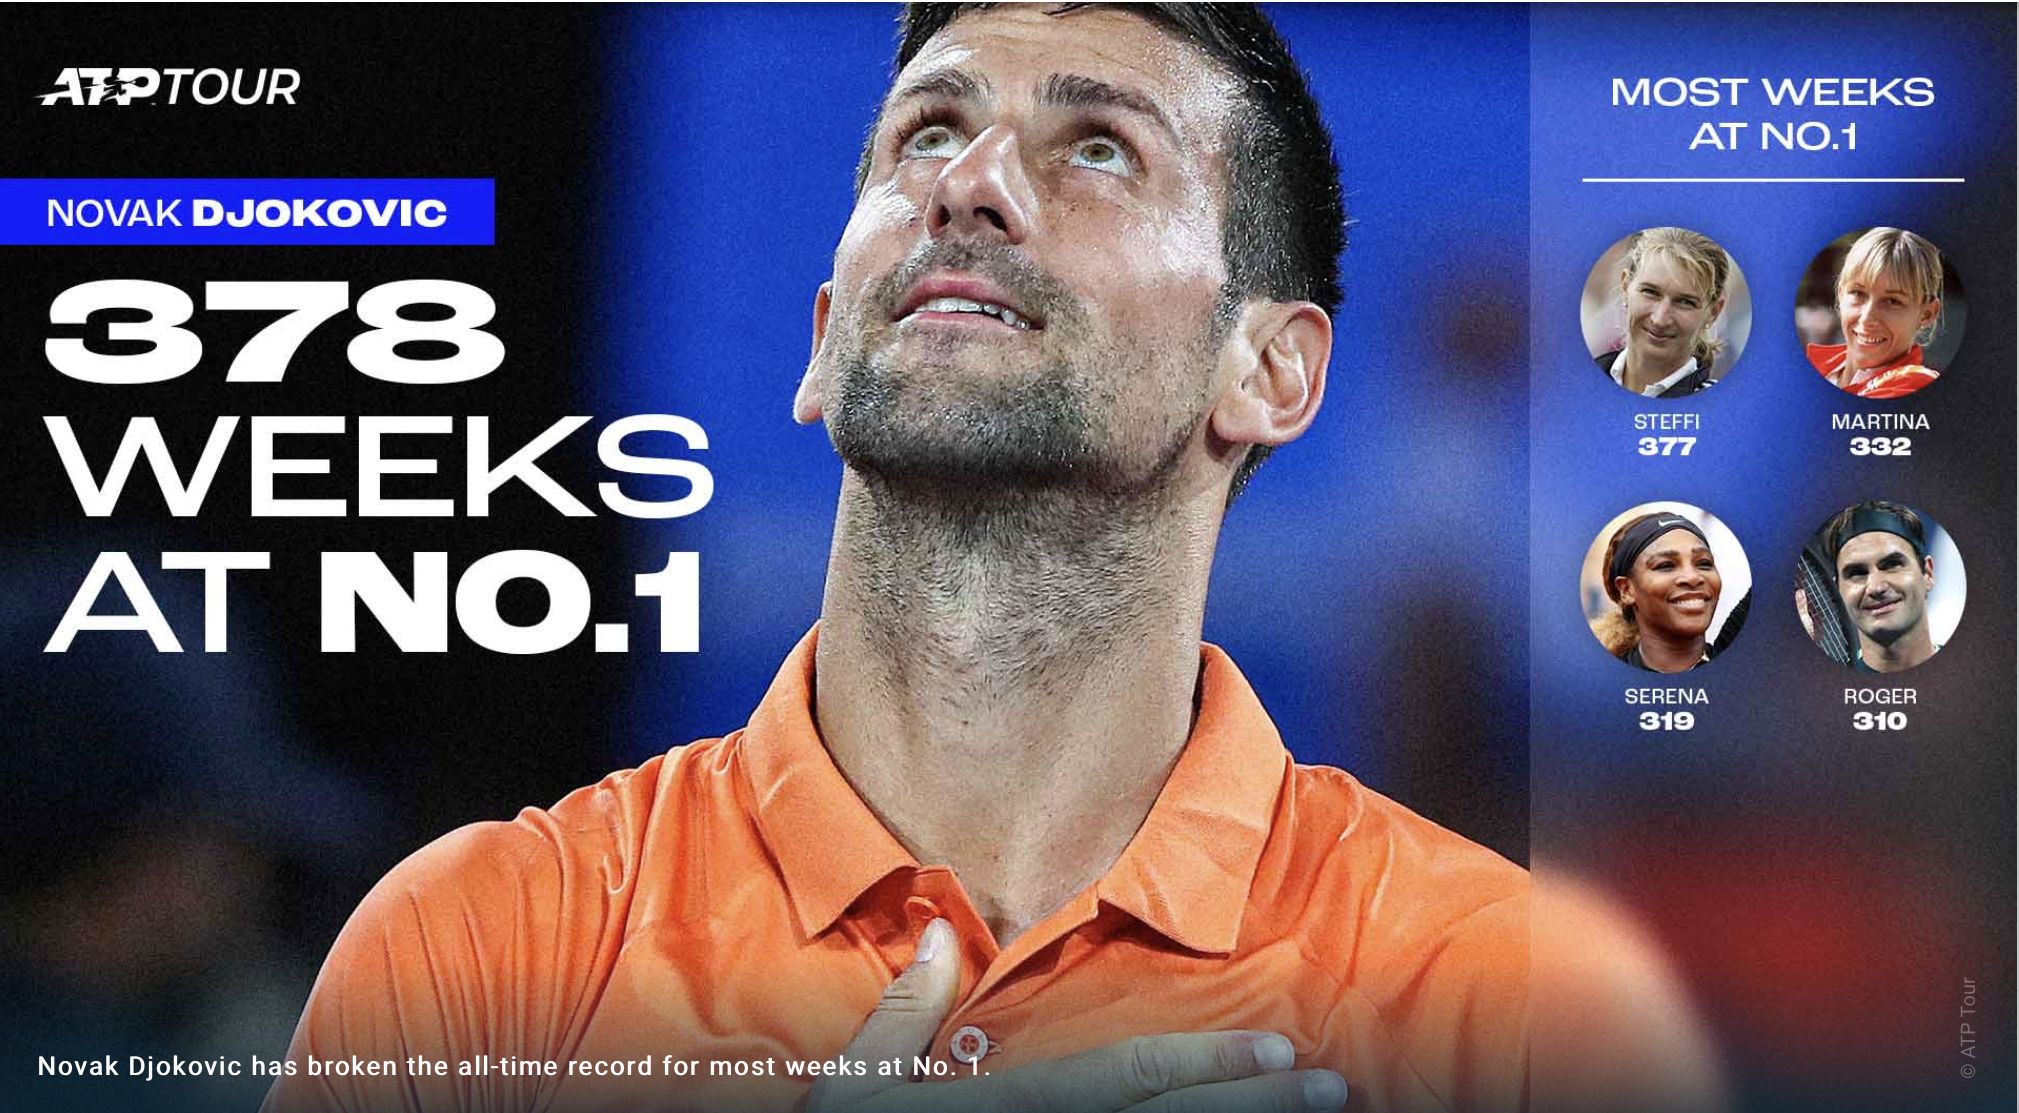 Il record di Djokovic nell'infografica del sito ATPtour.com